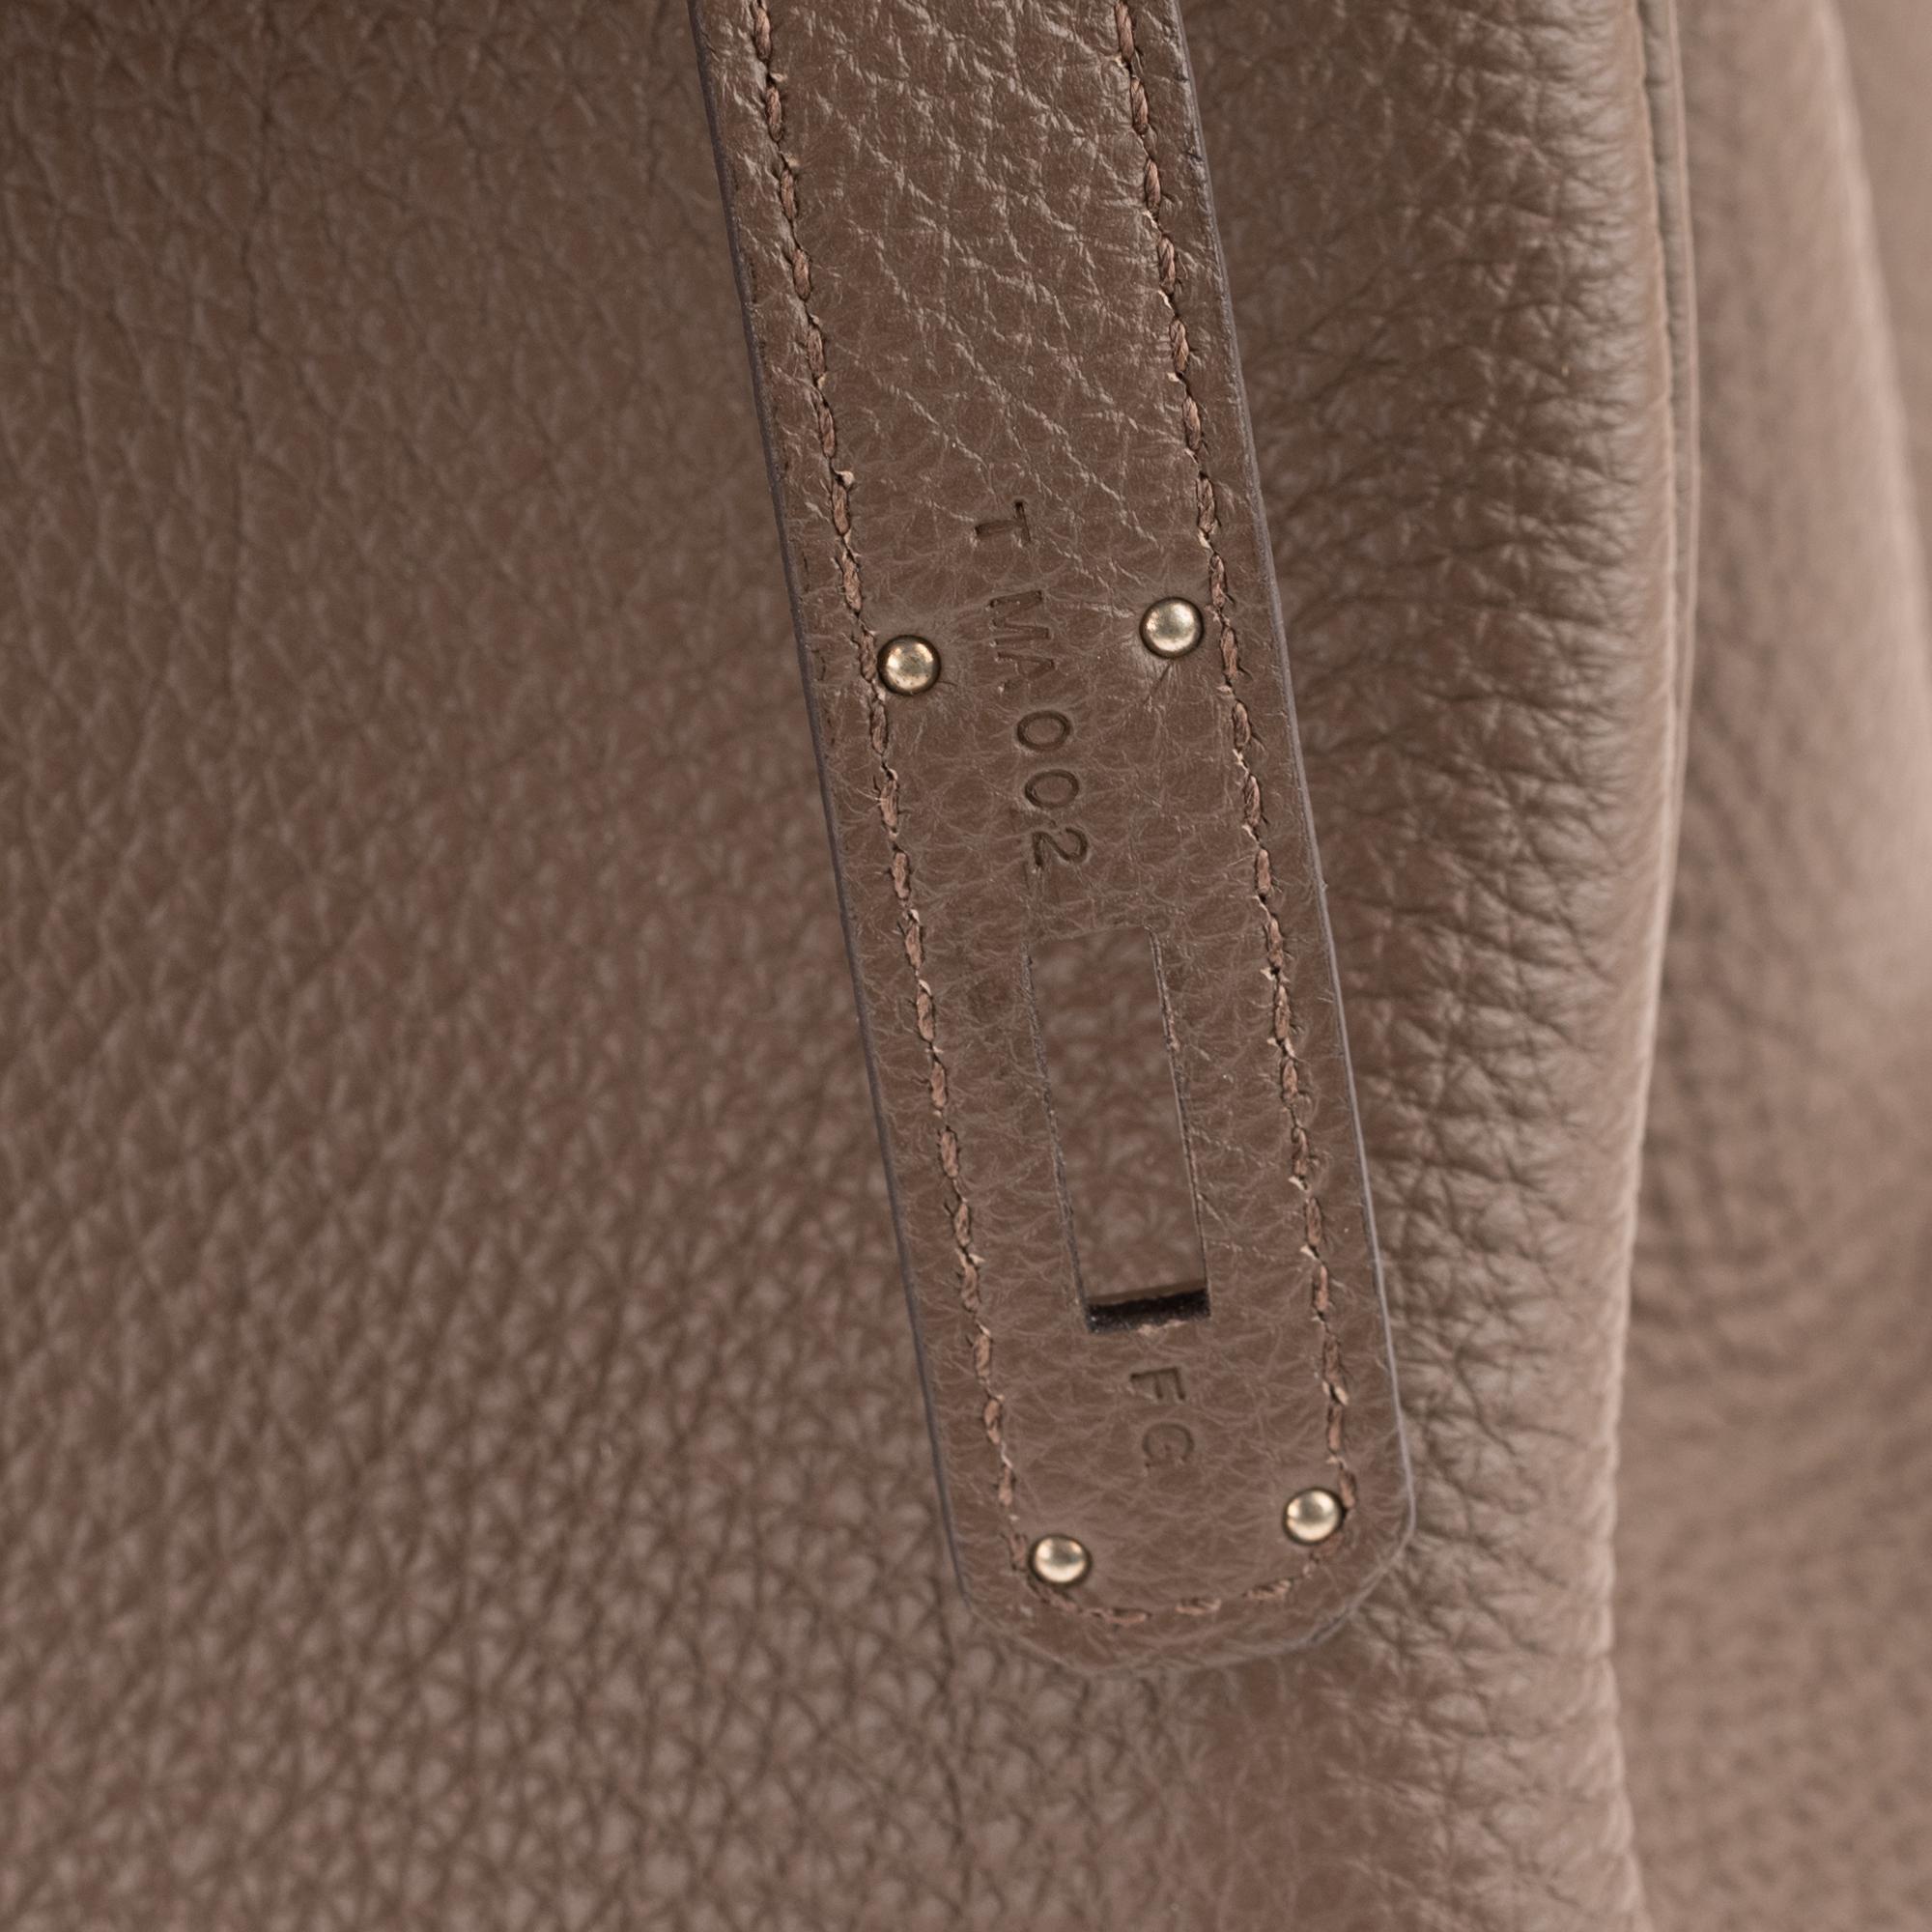 Hermès Birkin 35 Handtasche aus Togo-Leder in Taupe-Farbe und silberner Hardware! 1